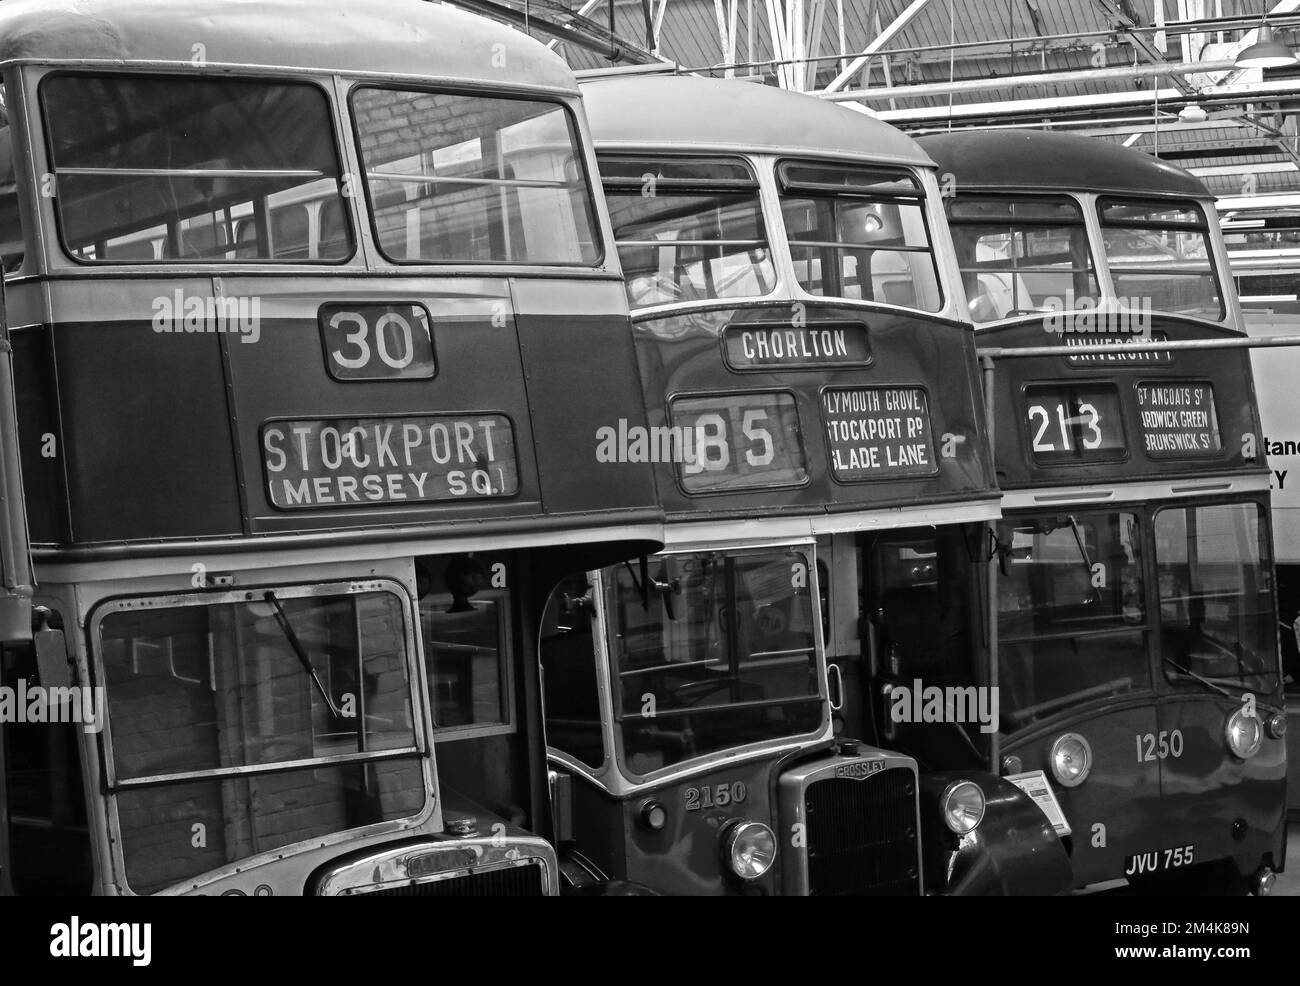 Historische Busse von Manchester in Queens Road Depot, Stockport 30, Chorlton 85, University 213, 1951 Crossley Dominion Trolley Bus JVU755 Stockfoto